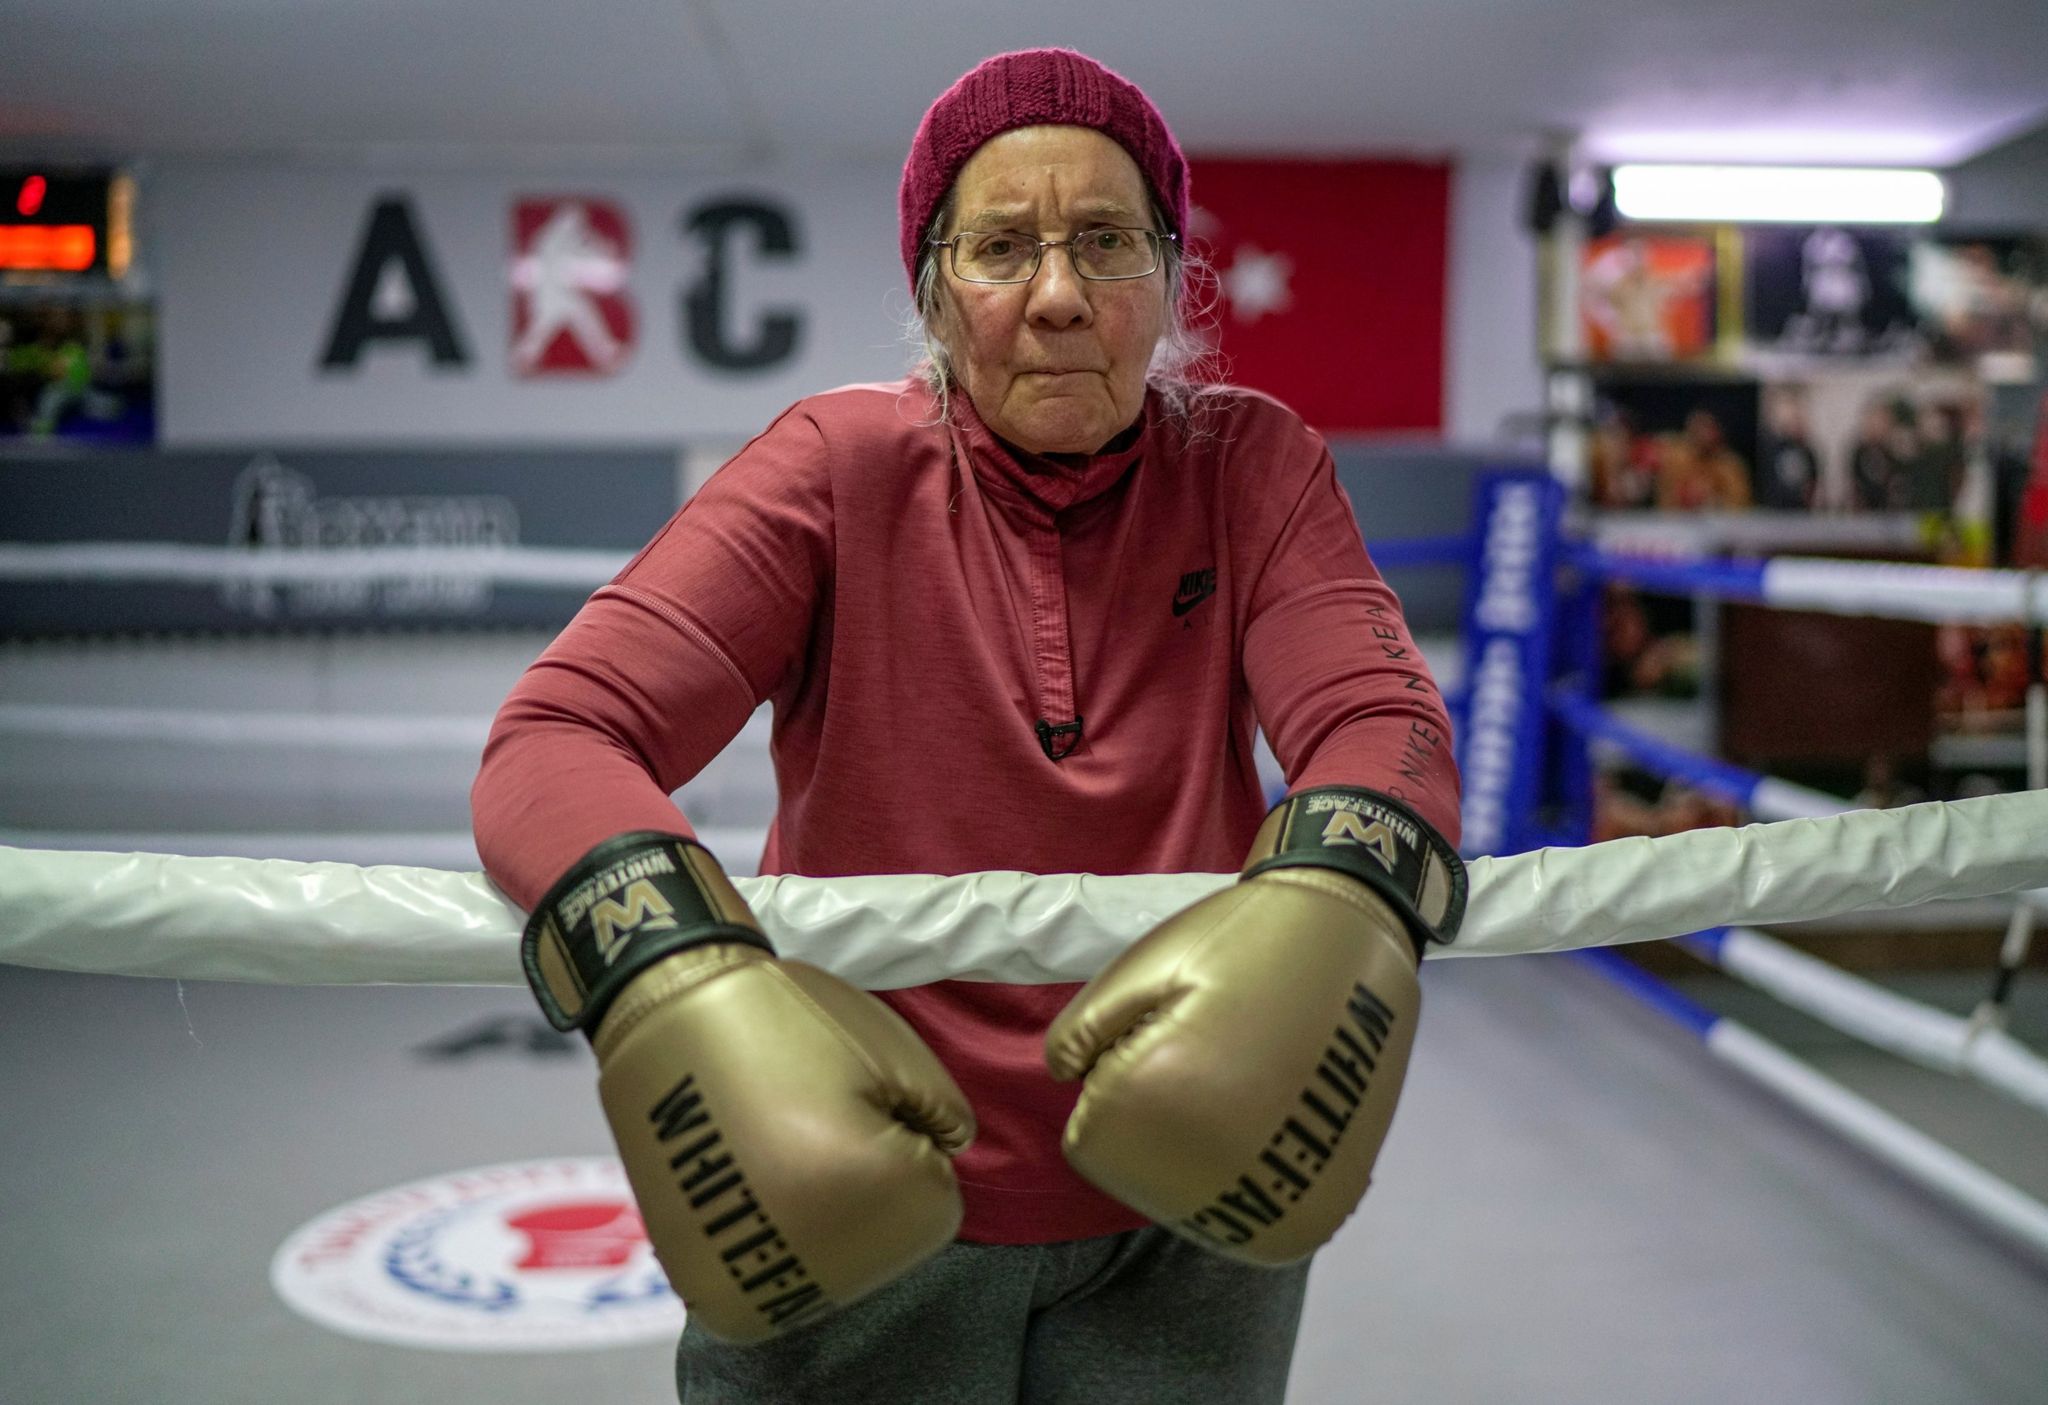 Për t’u habitur/ 75-vjeçarja me ‘Parkinson’ praktikon sportin e boksit për të mposhtur sëmundjen